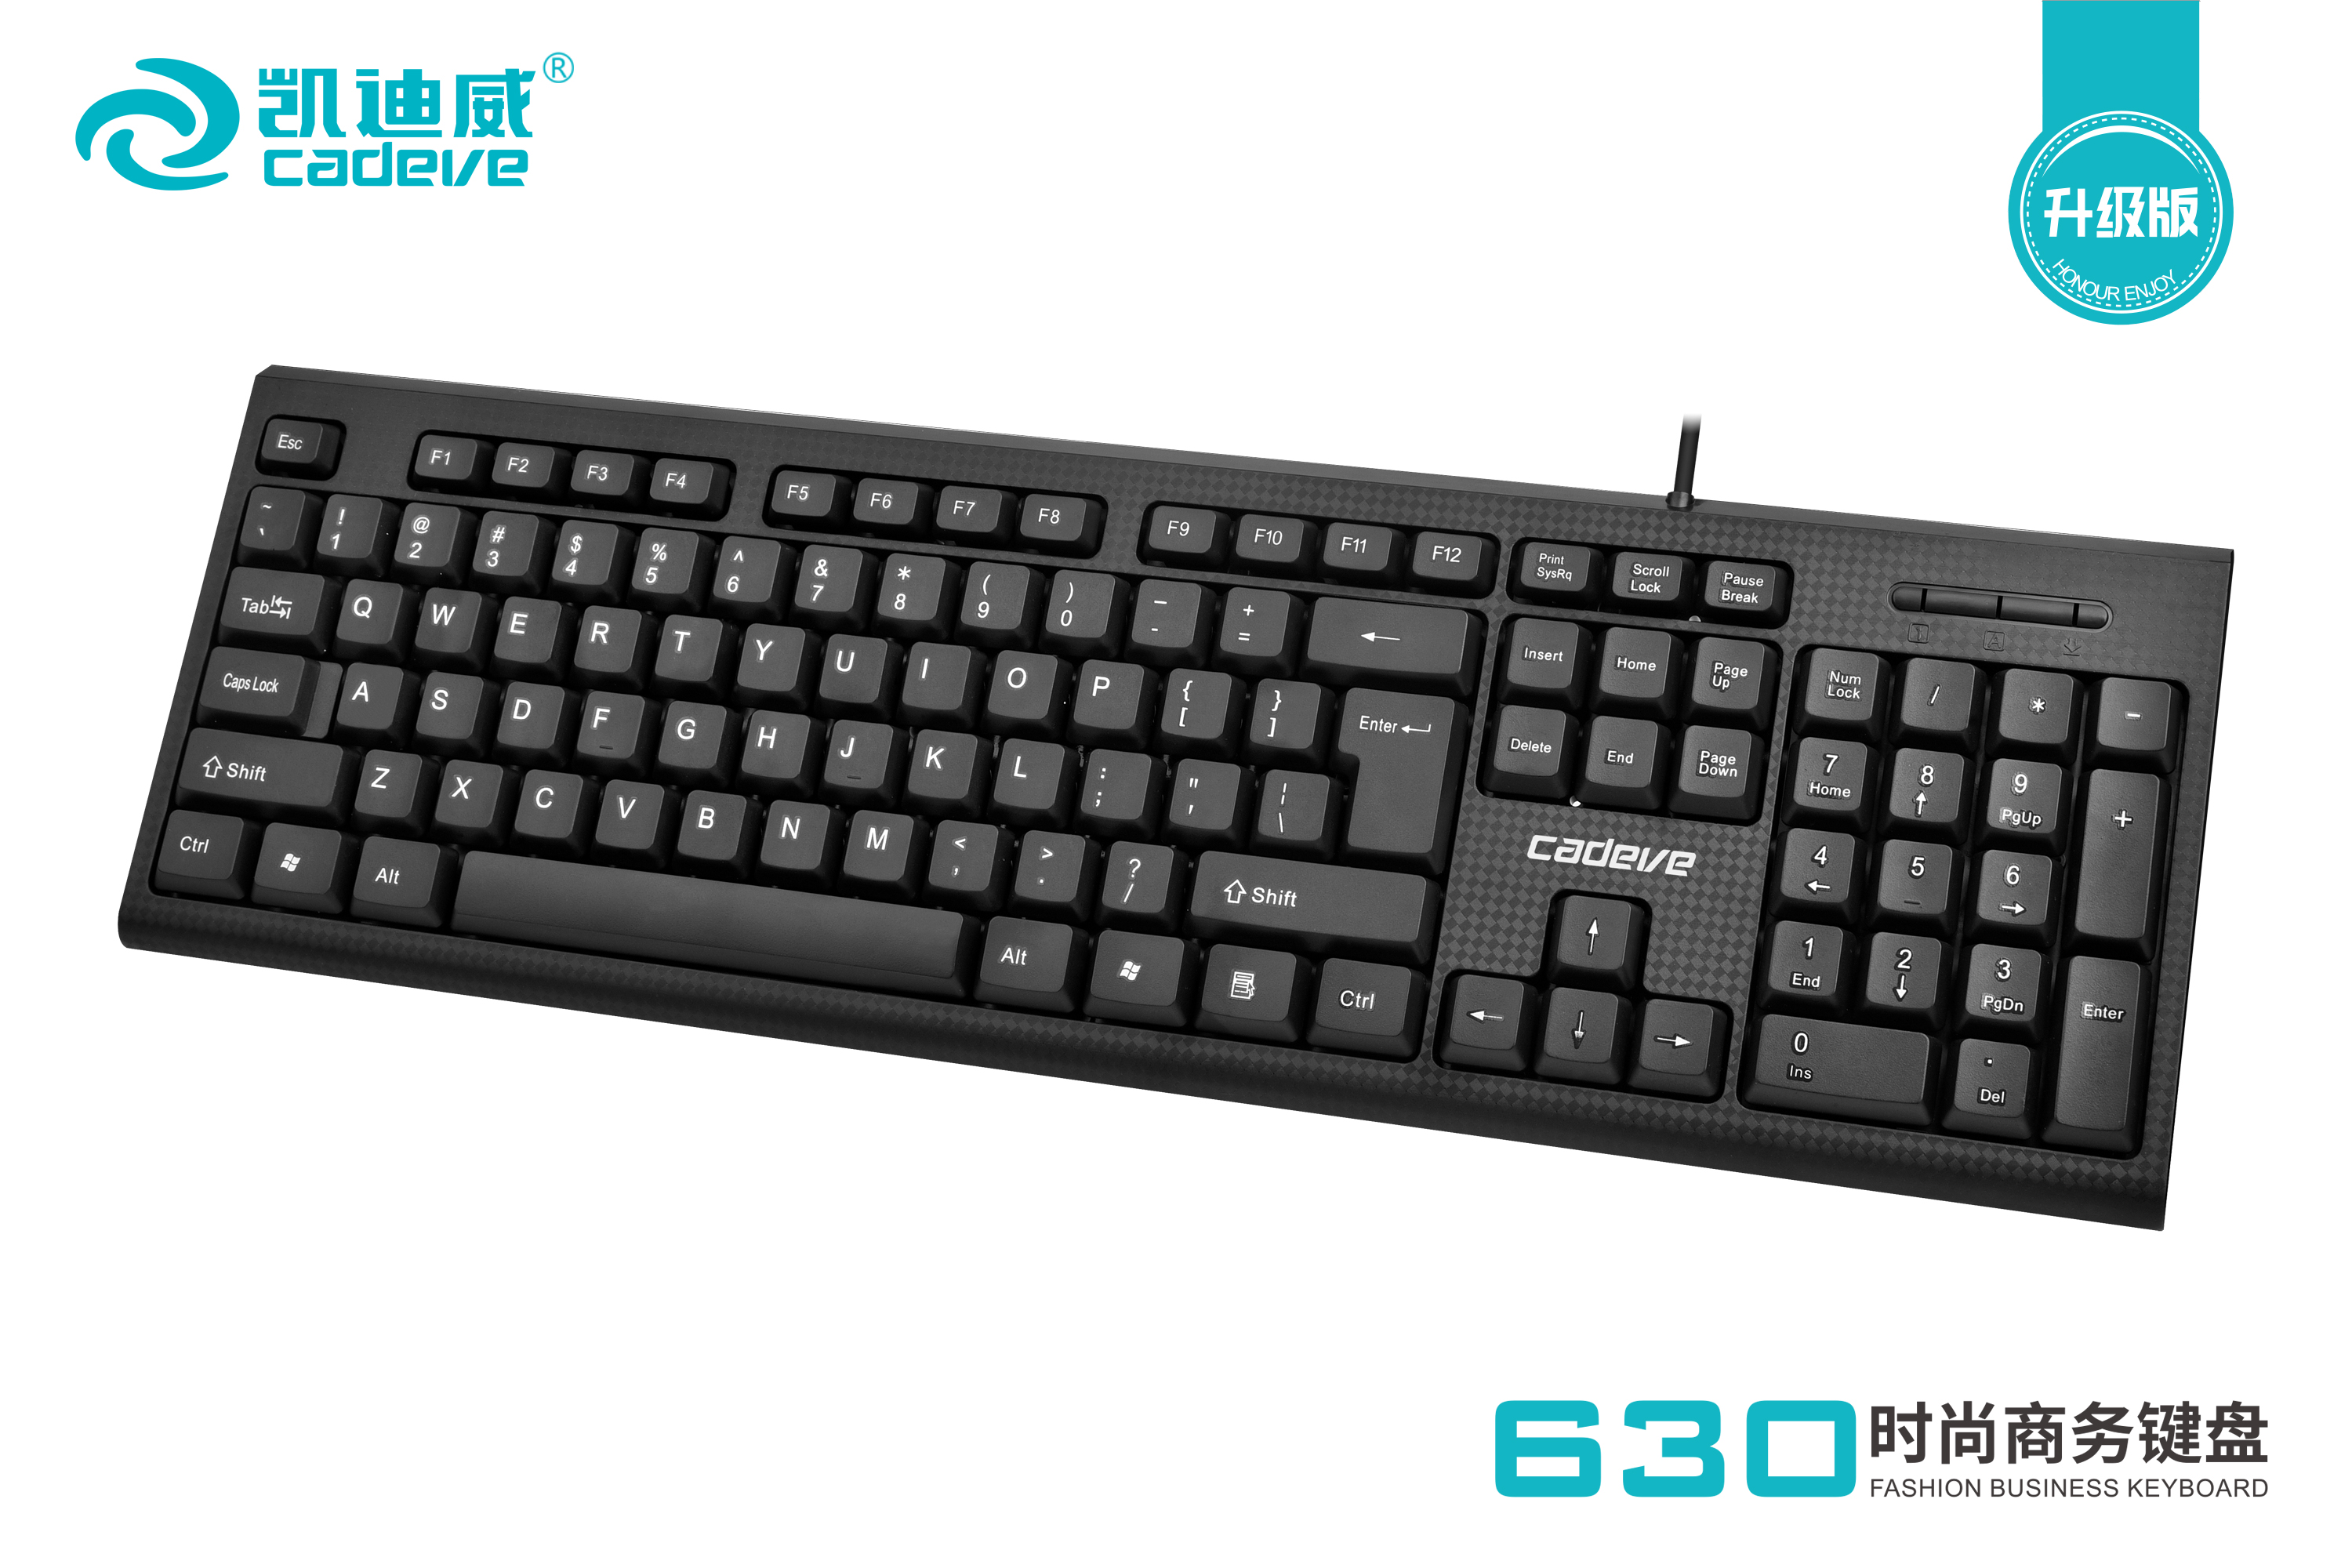 凯迪威630升级版时尚商务键盘